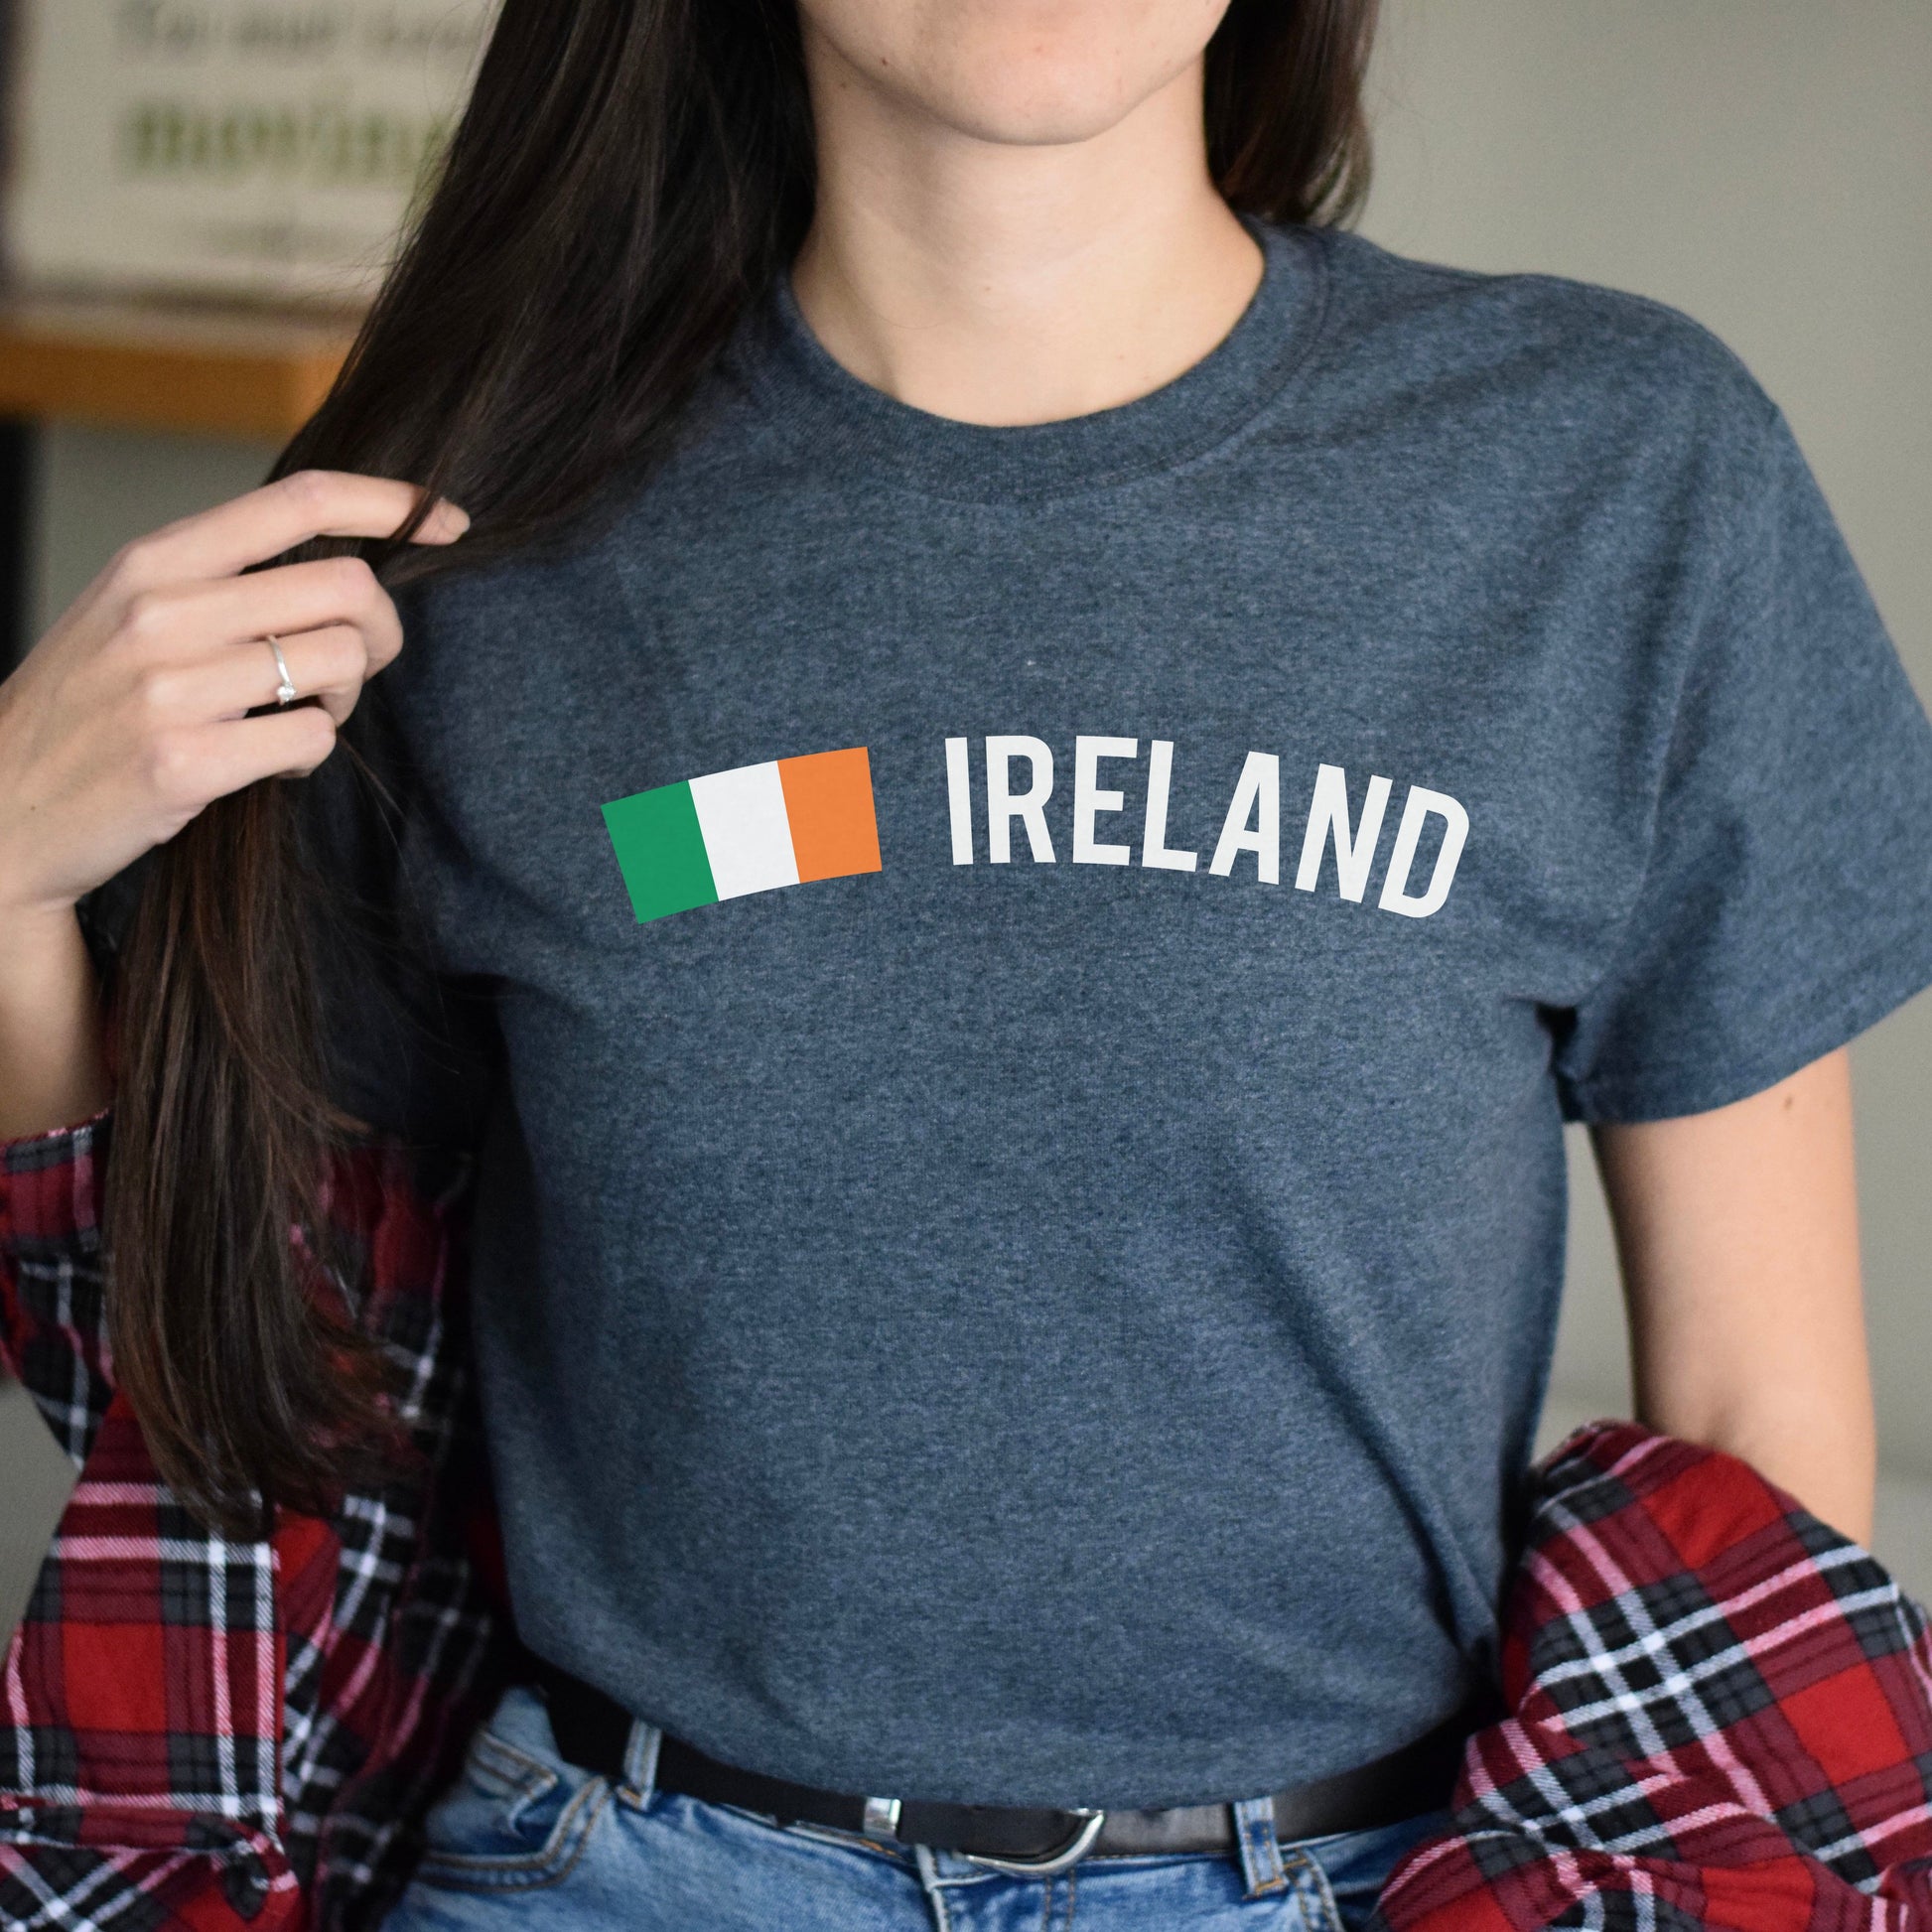 Ireland Unisex T-shirt gift Irish flag tee Dublin White Black Dark Heather-Dark Heather-Family-Gift-Planet